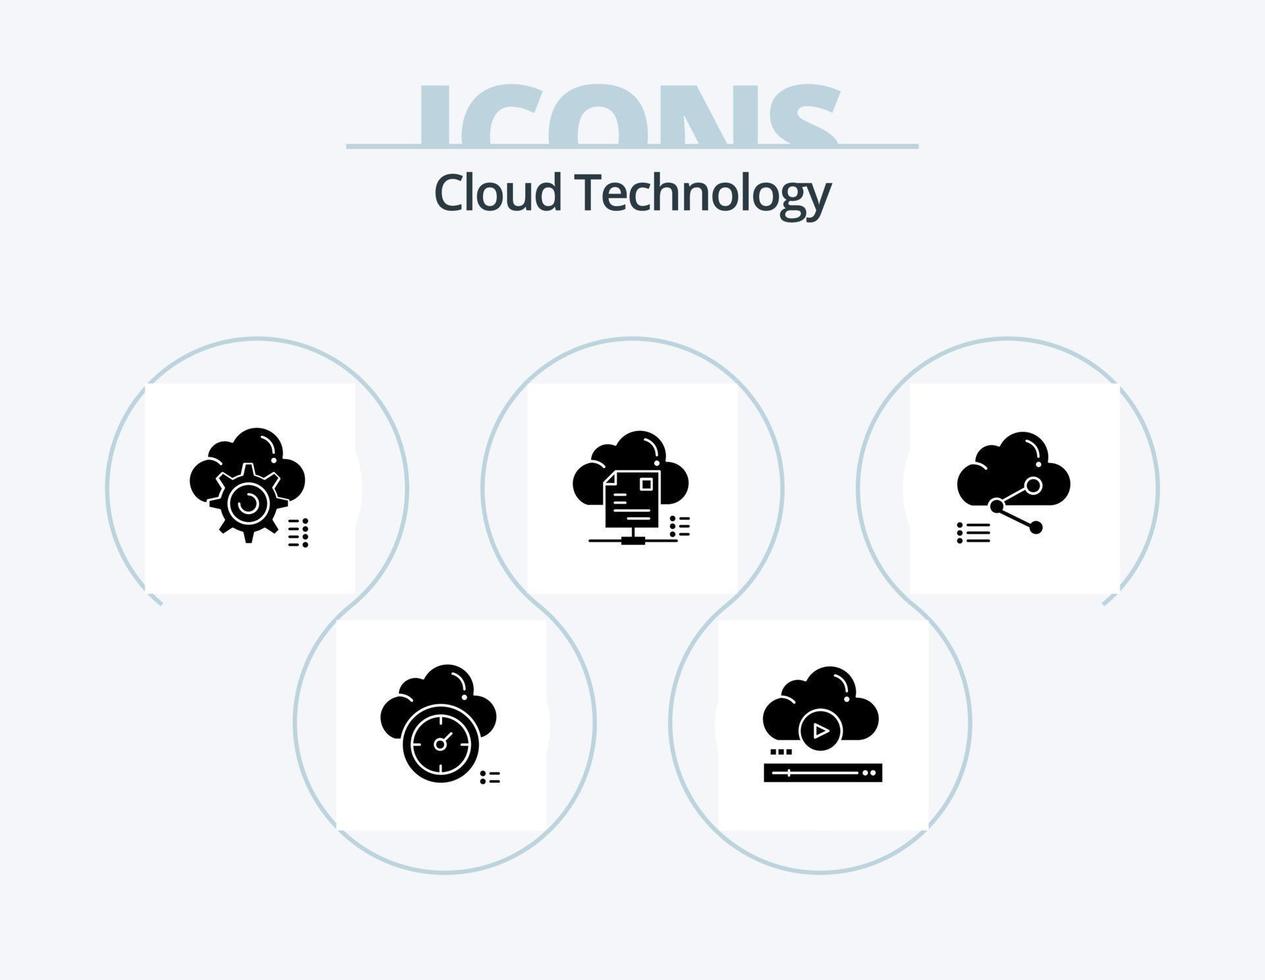 paquete de iconos de glifo de tecnología de nube 5 diseño de iconos. nube. intercambio. en línea. expediente. informática vector